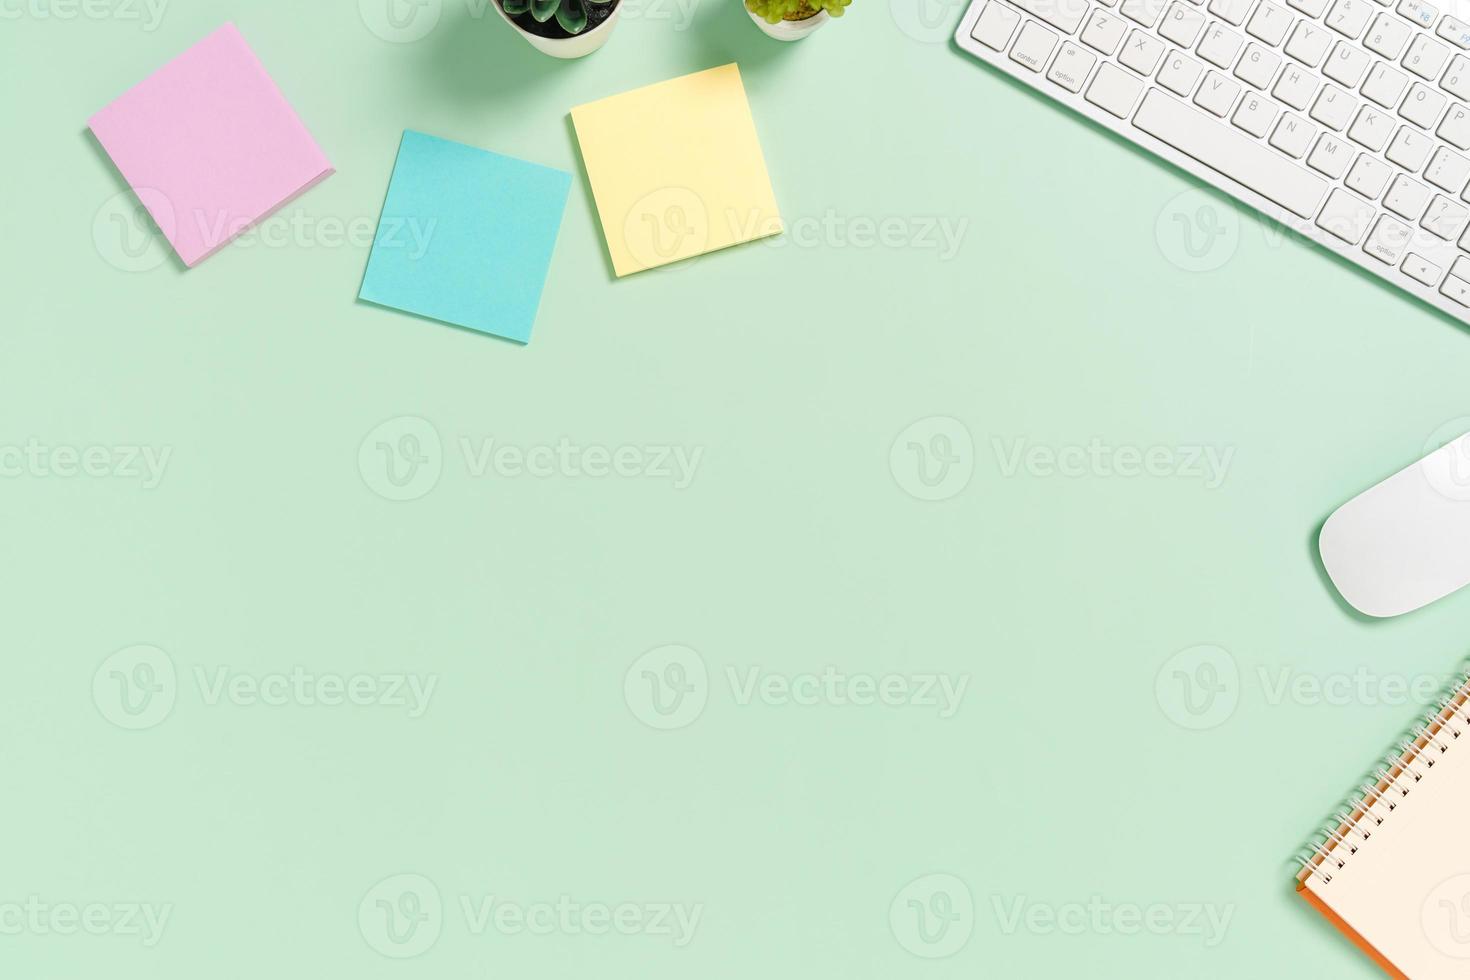 minimaler arbeitsplatz - kreatives flaches foto des arbeitsplatzes. Schreibtisch von oben mit Tastatur, Maus und Buch auf pastellgrünem Hintergrund. Draufsicht mit Kopienraum, Flachfotografie.